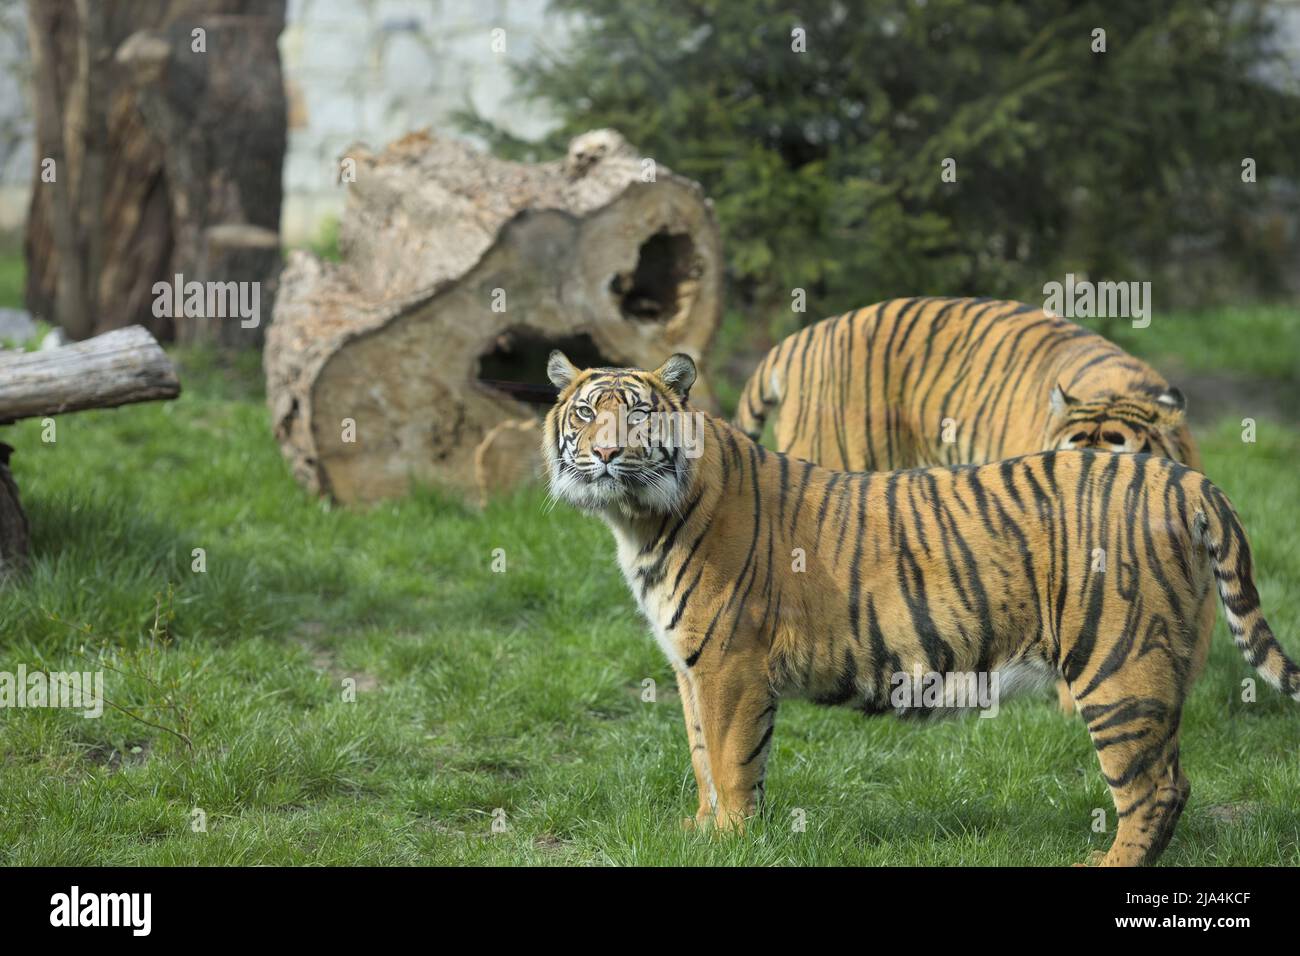 Tigre regardant le photographe au zoo de Wrocław, le plus ancien jardin zoologique de Pologne. Banque D'Images